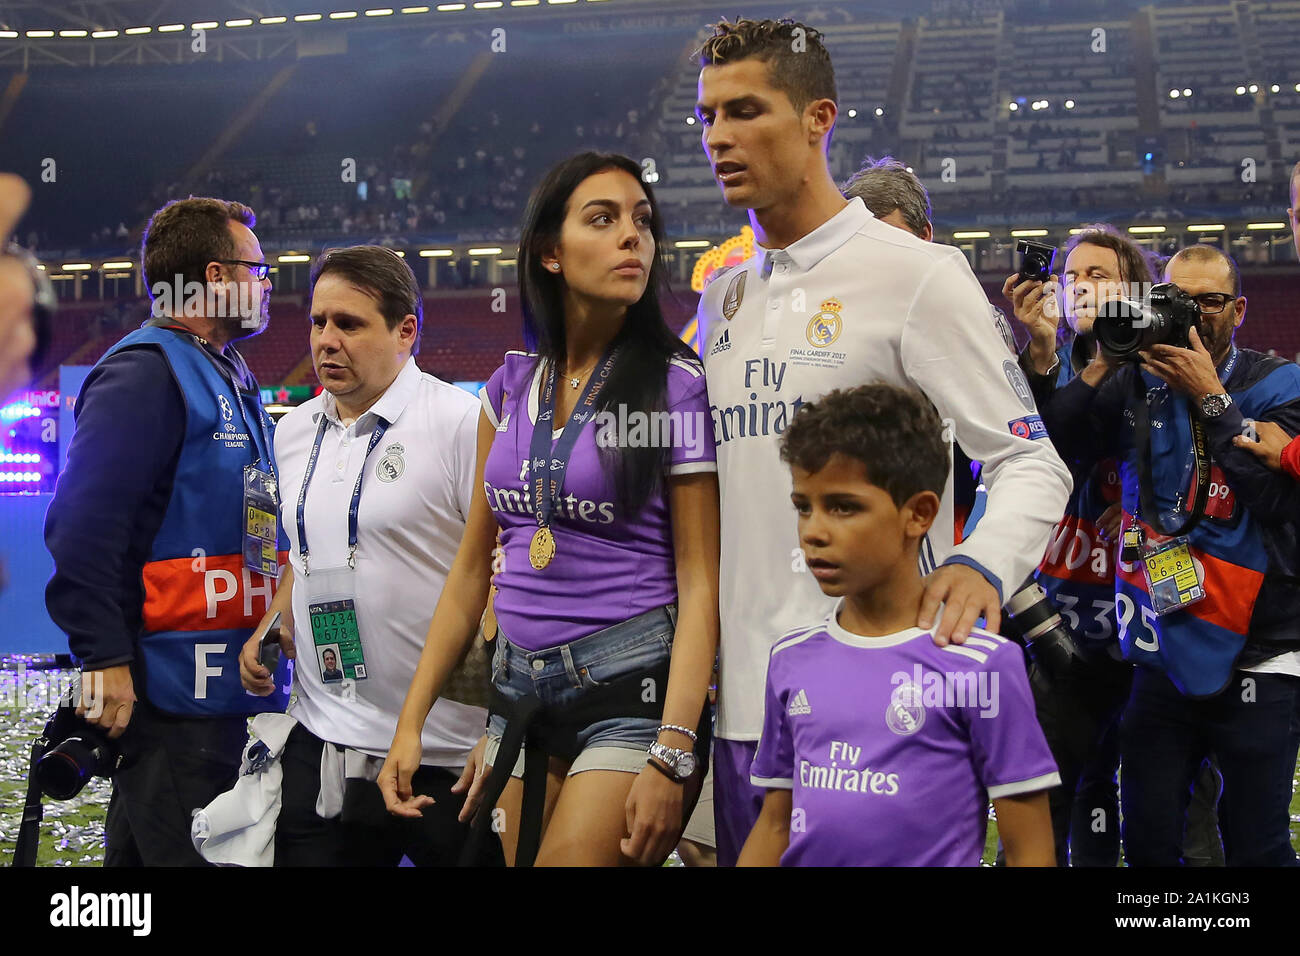 Modelan juntos Cristiano Ronaldo e hijo - San Diego Union-Tribune en Español